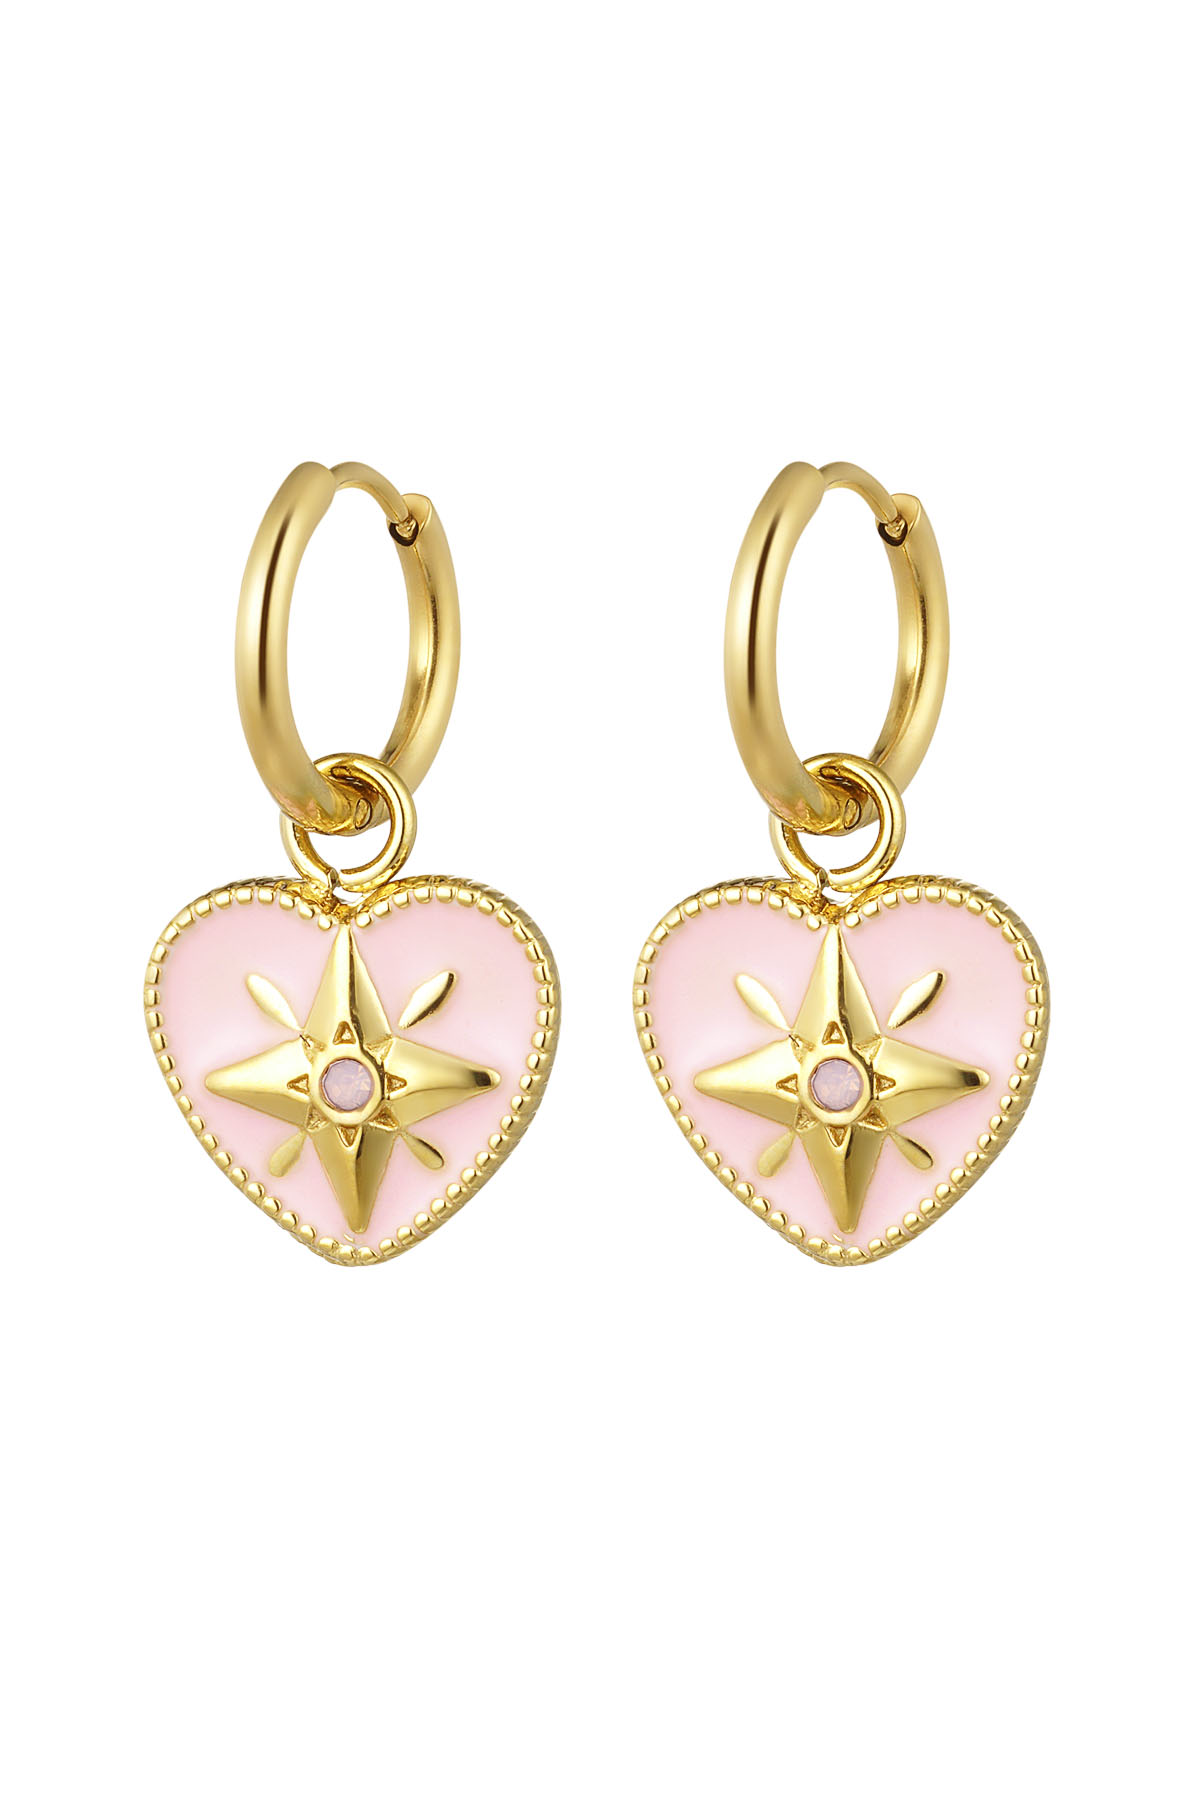 Ohrringe farbiges Herz mit Stern - Gold/Rosa